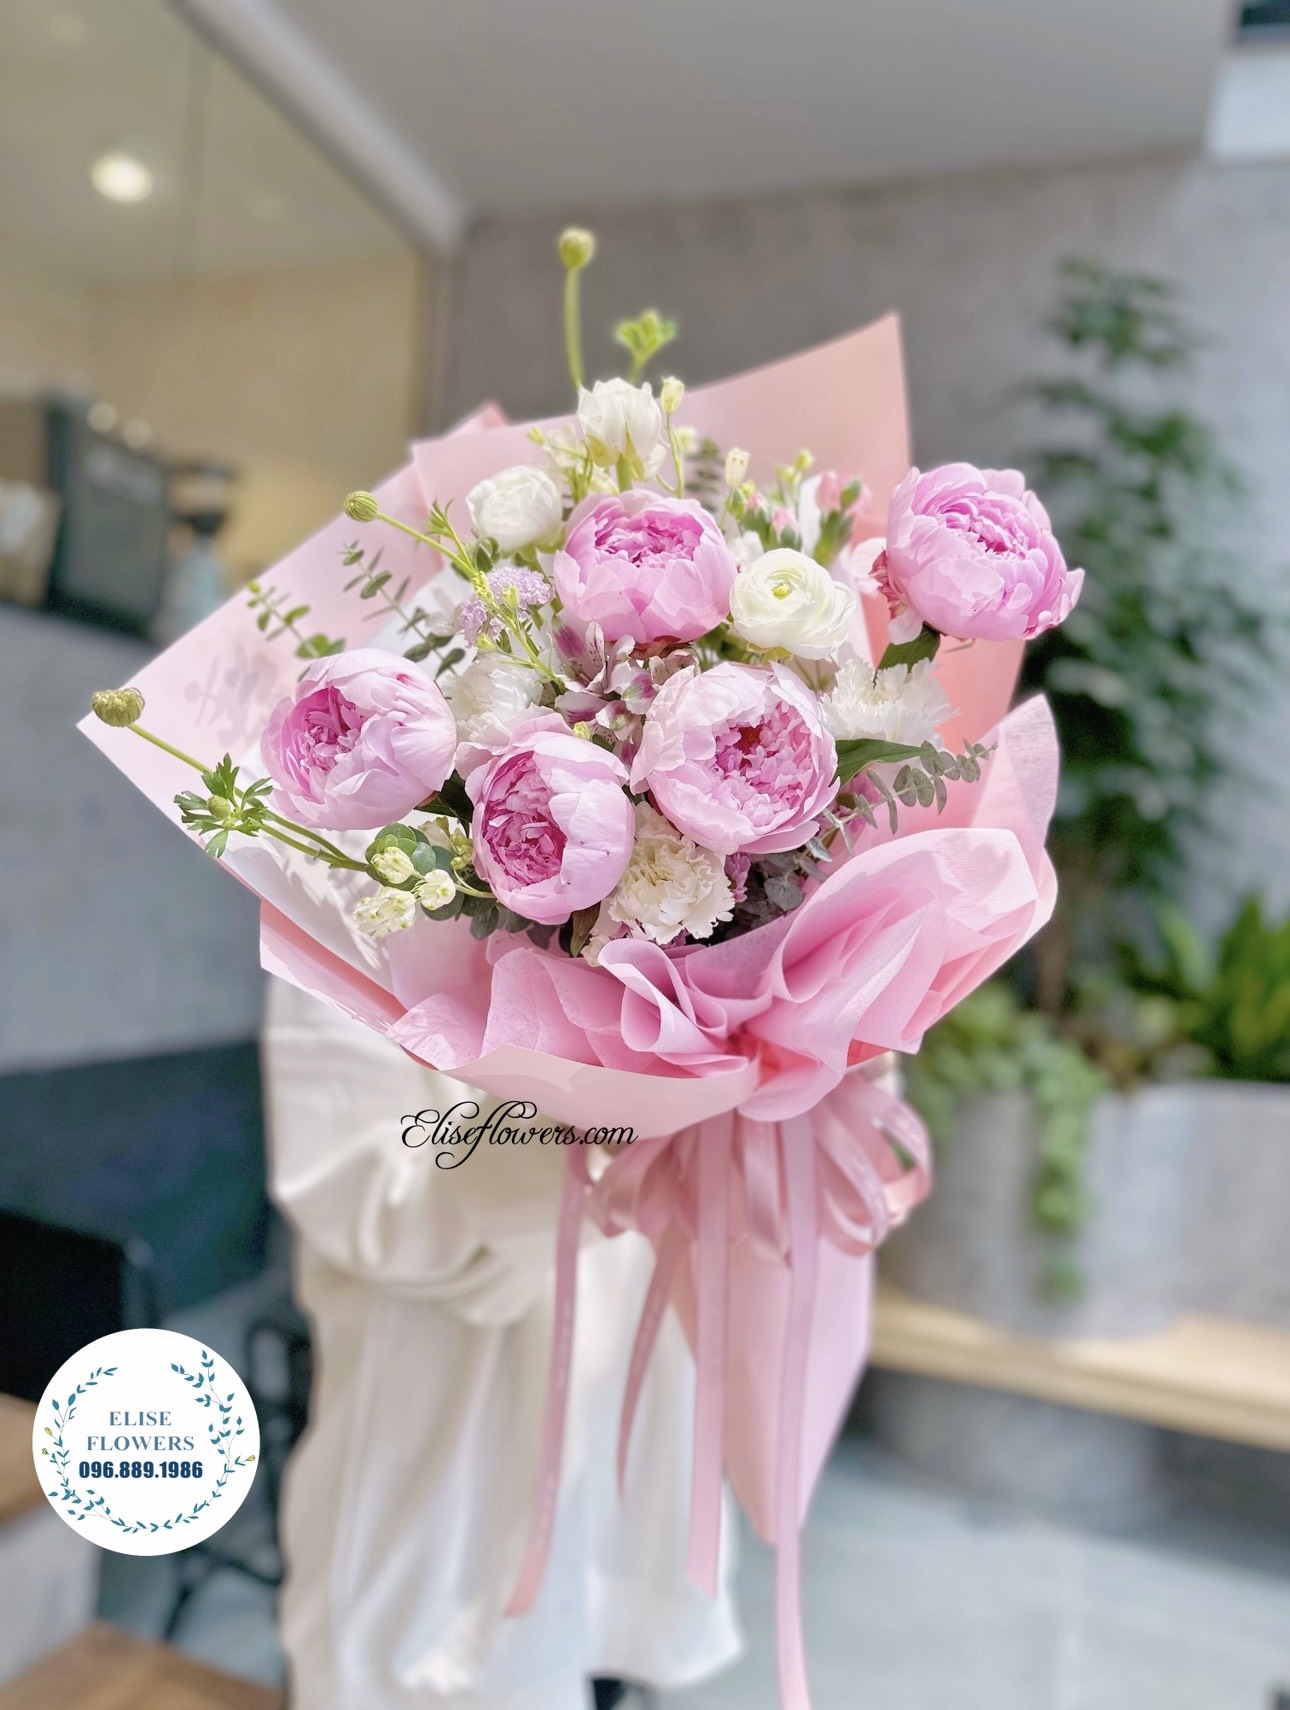 Bó hoa mẫu đơn hồng đẹp ở Hà Nội. Đặt mua bó hoa mẫu đơn màu hồng nhập khẩu ở Hà Nội.